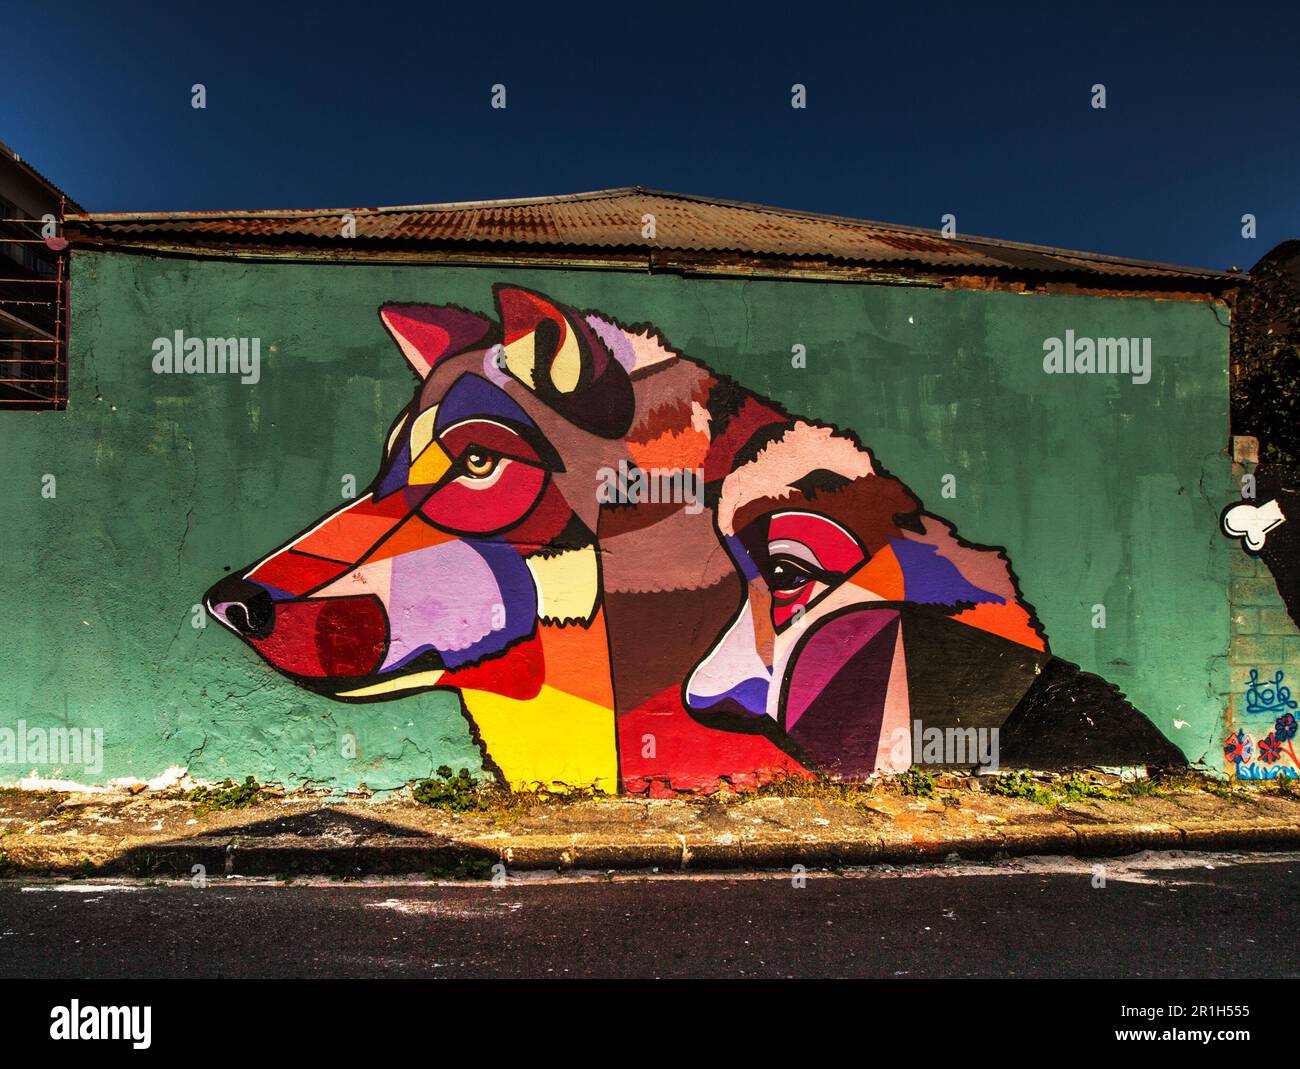 Città Street art, graffiti lupo e tag design con creatività all'aperto nelle vicinanze. Murale urbano, grafica animale e illustrazione con creatività Foto Stock